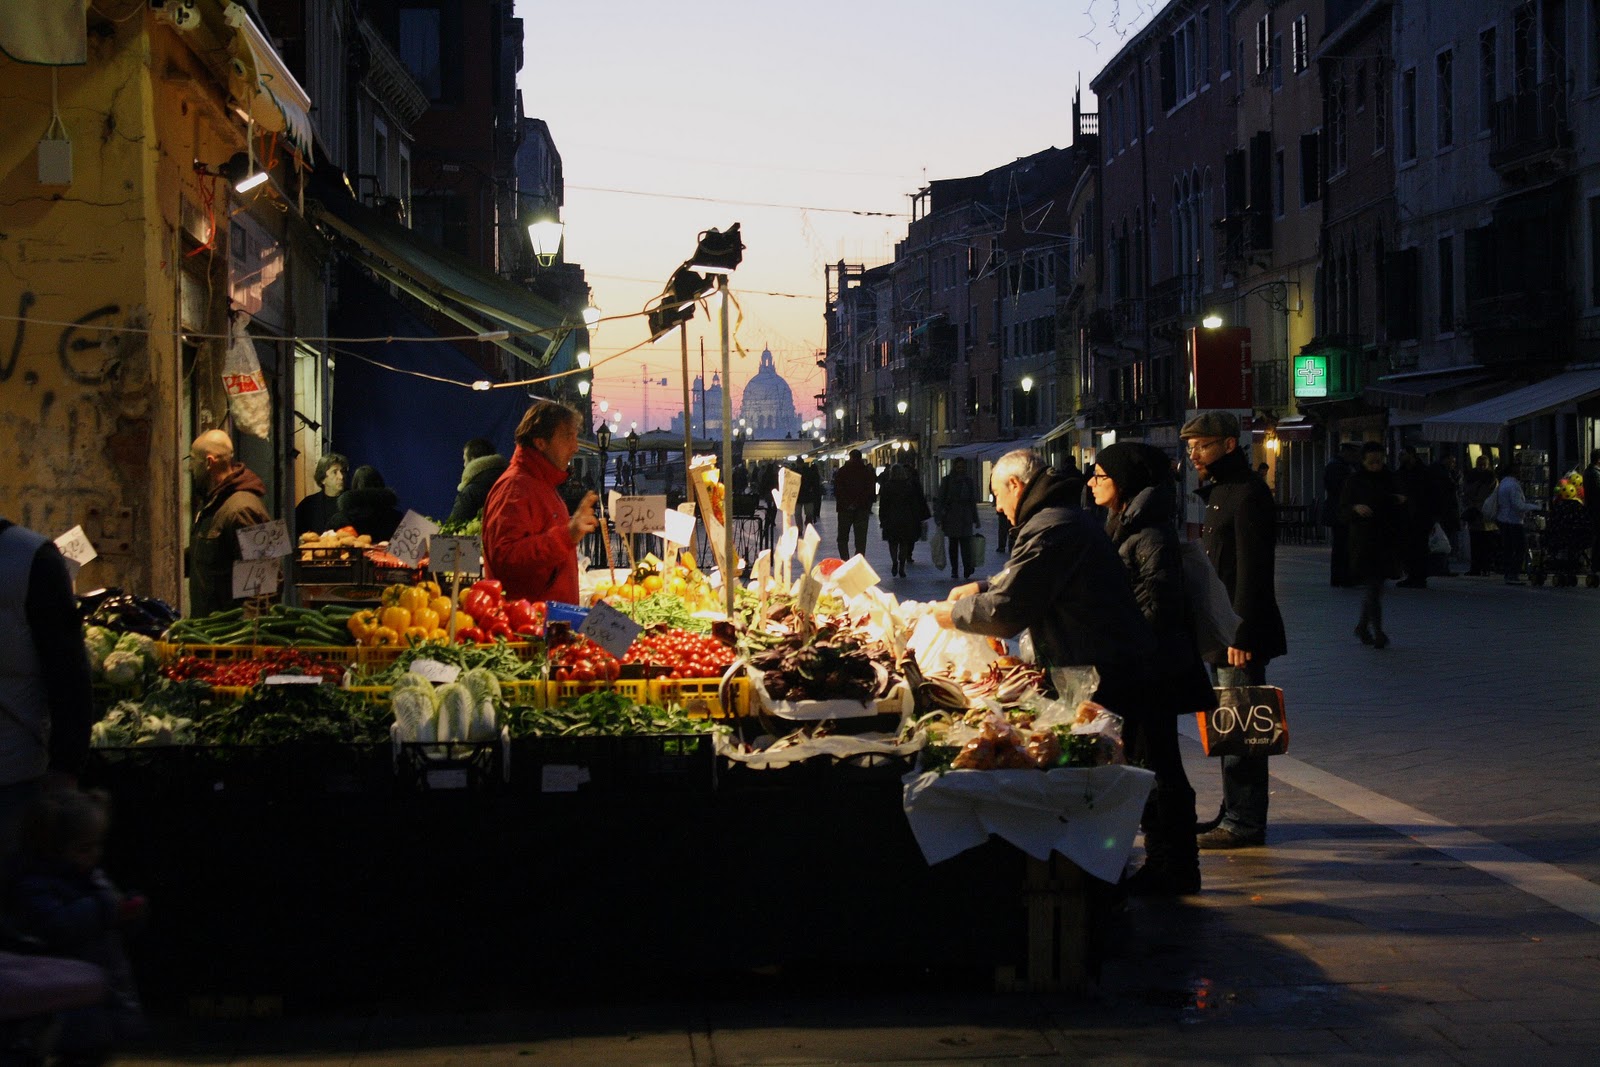 Market of Via Garibaldi in Venice